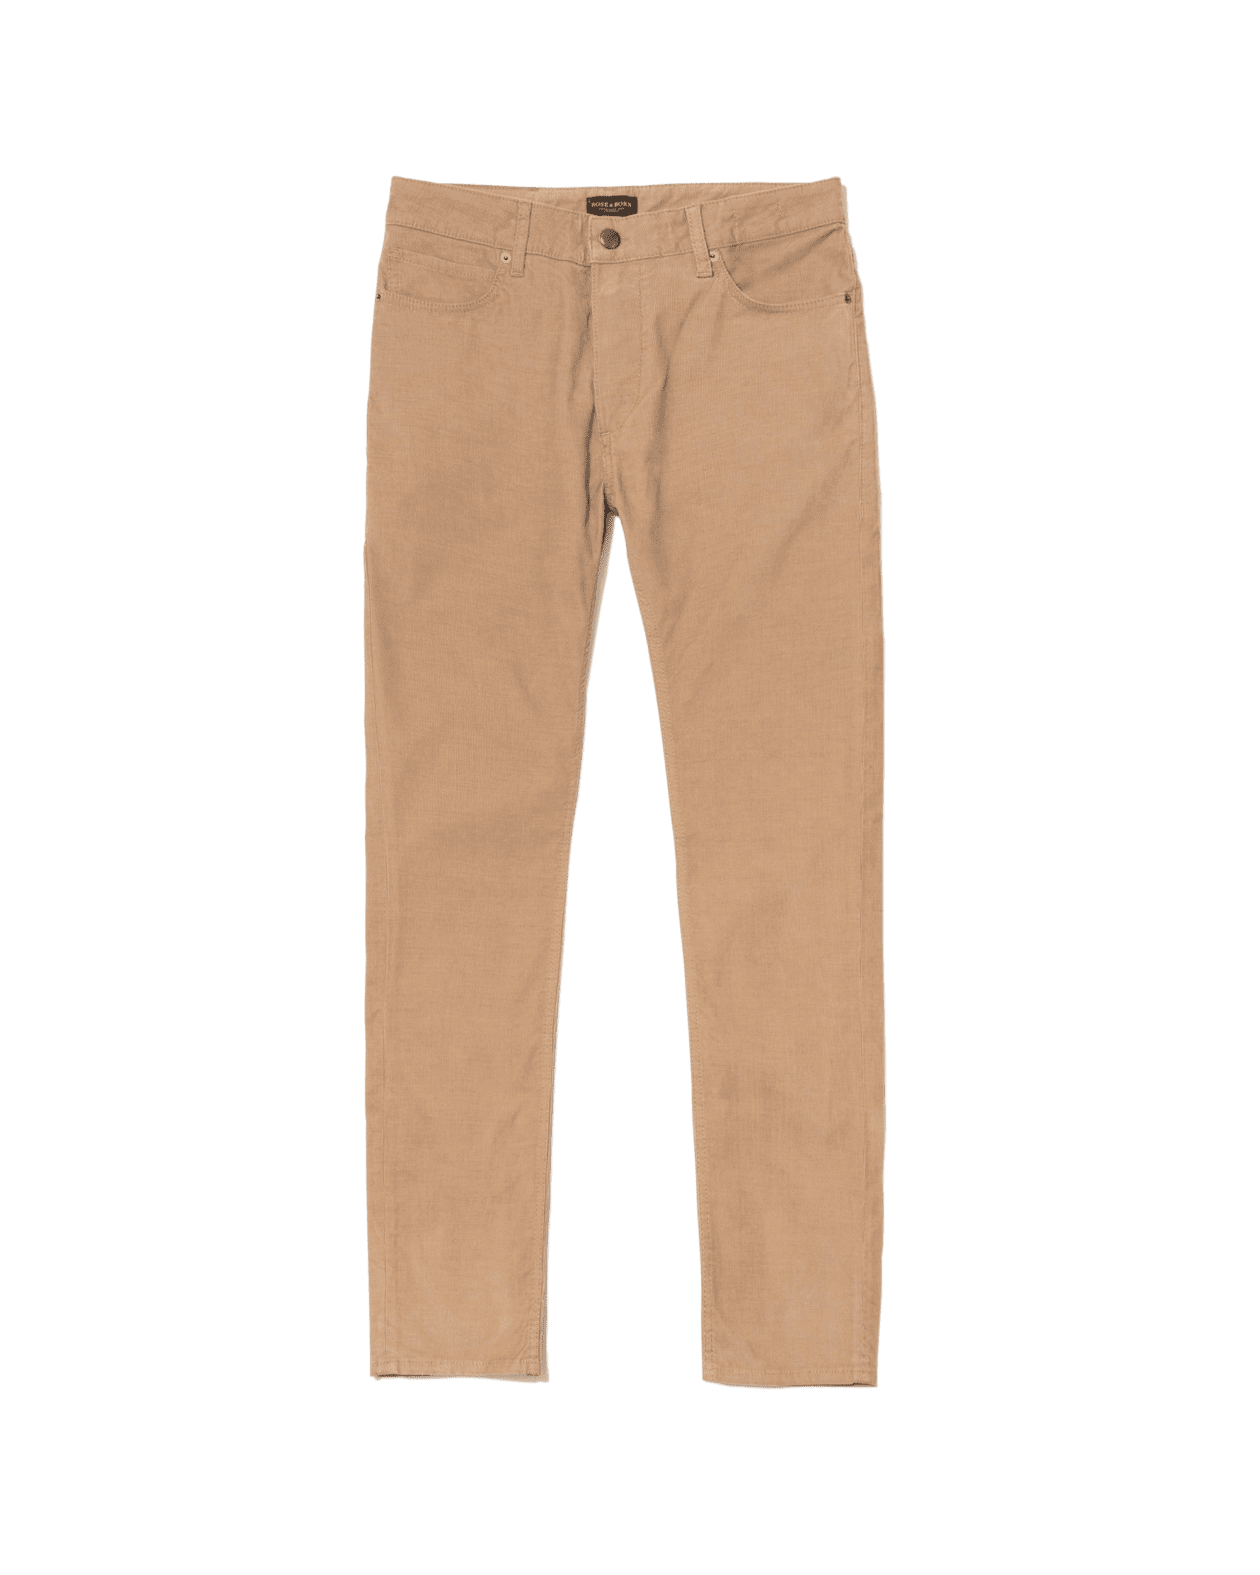 Rose & Born Khaki Pincord 5-pocket trouser